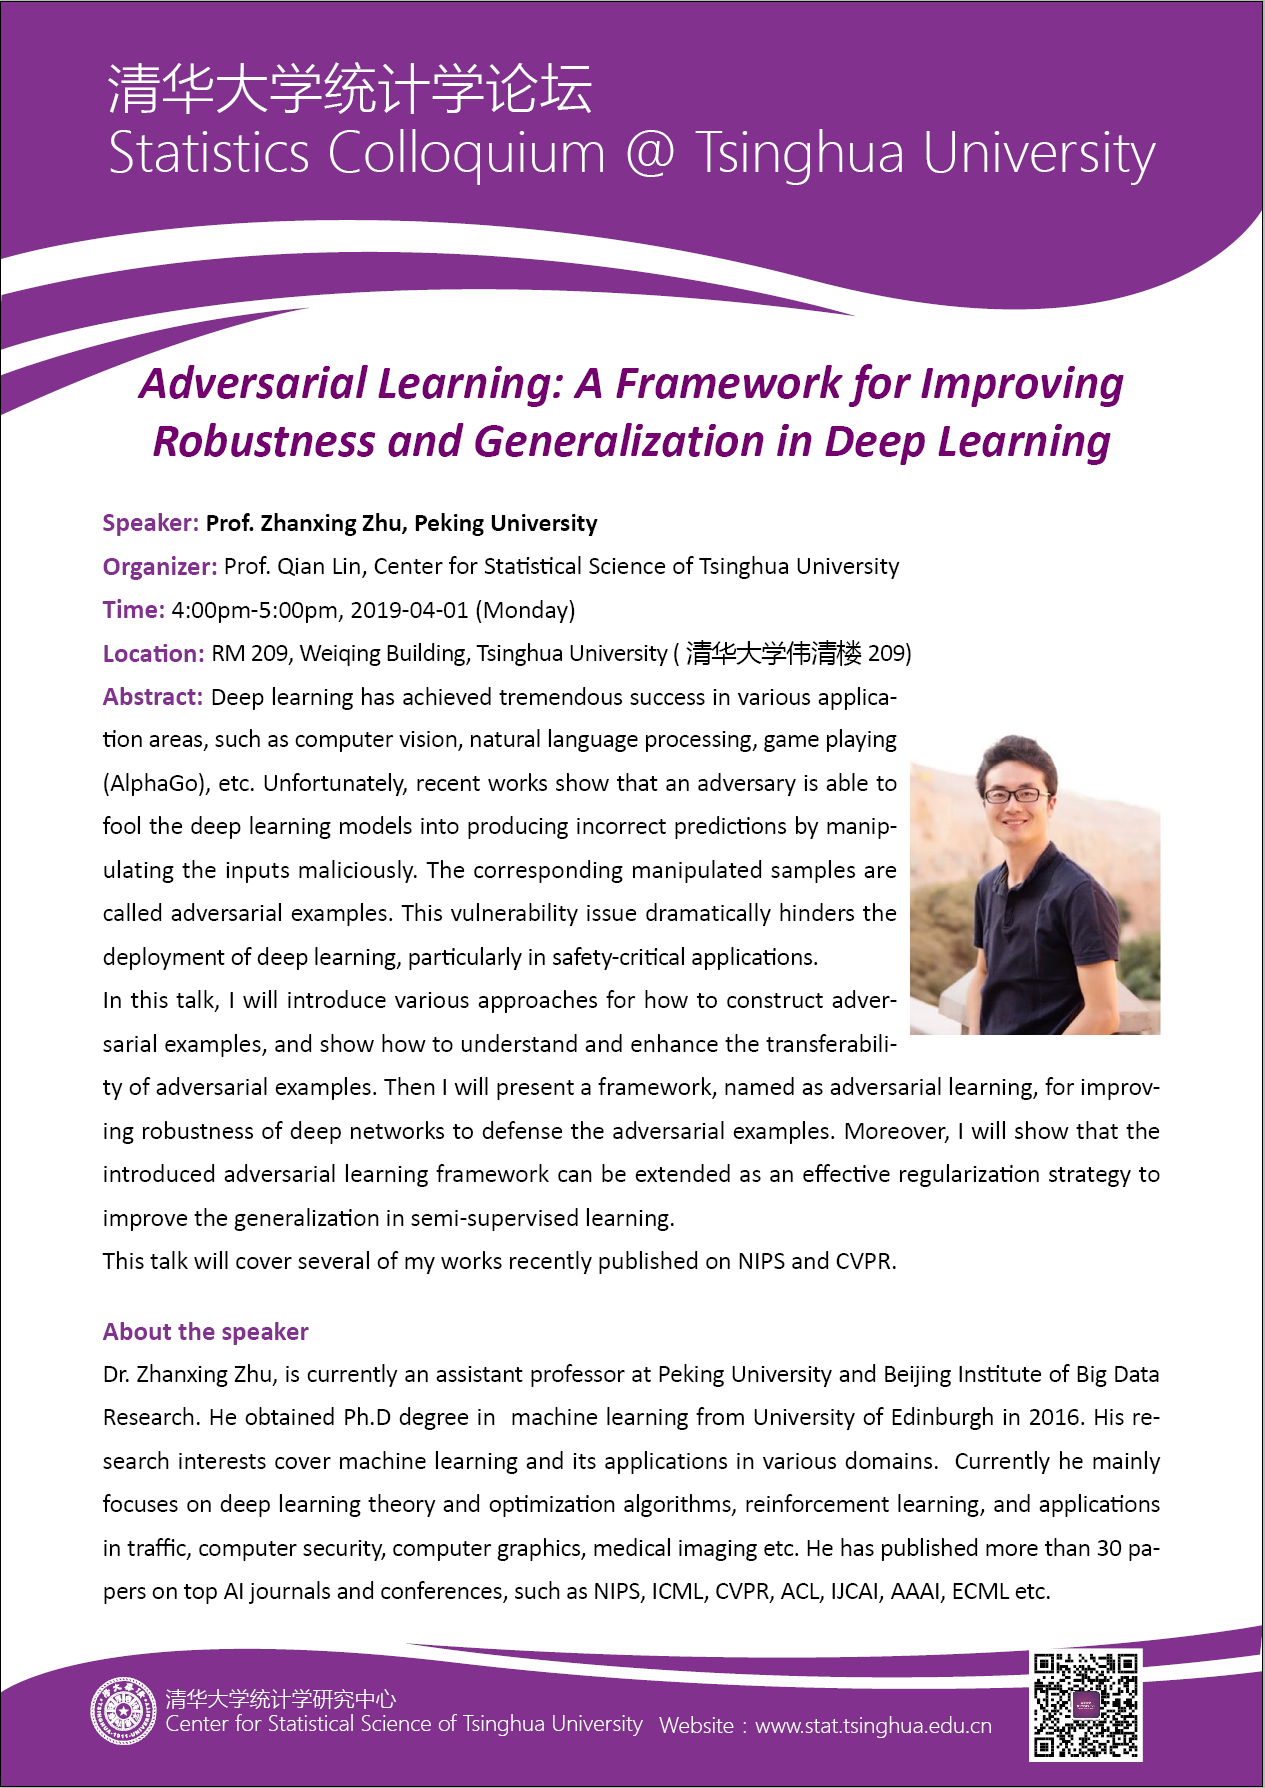 【统计学论坛】Adversarial Learning: A Framework for Improving Robustness and Generalization in Deep Learning